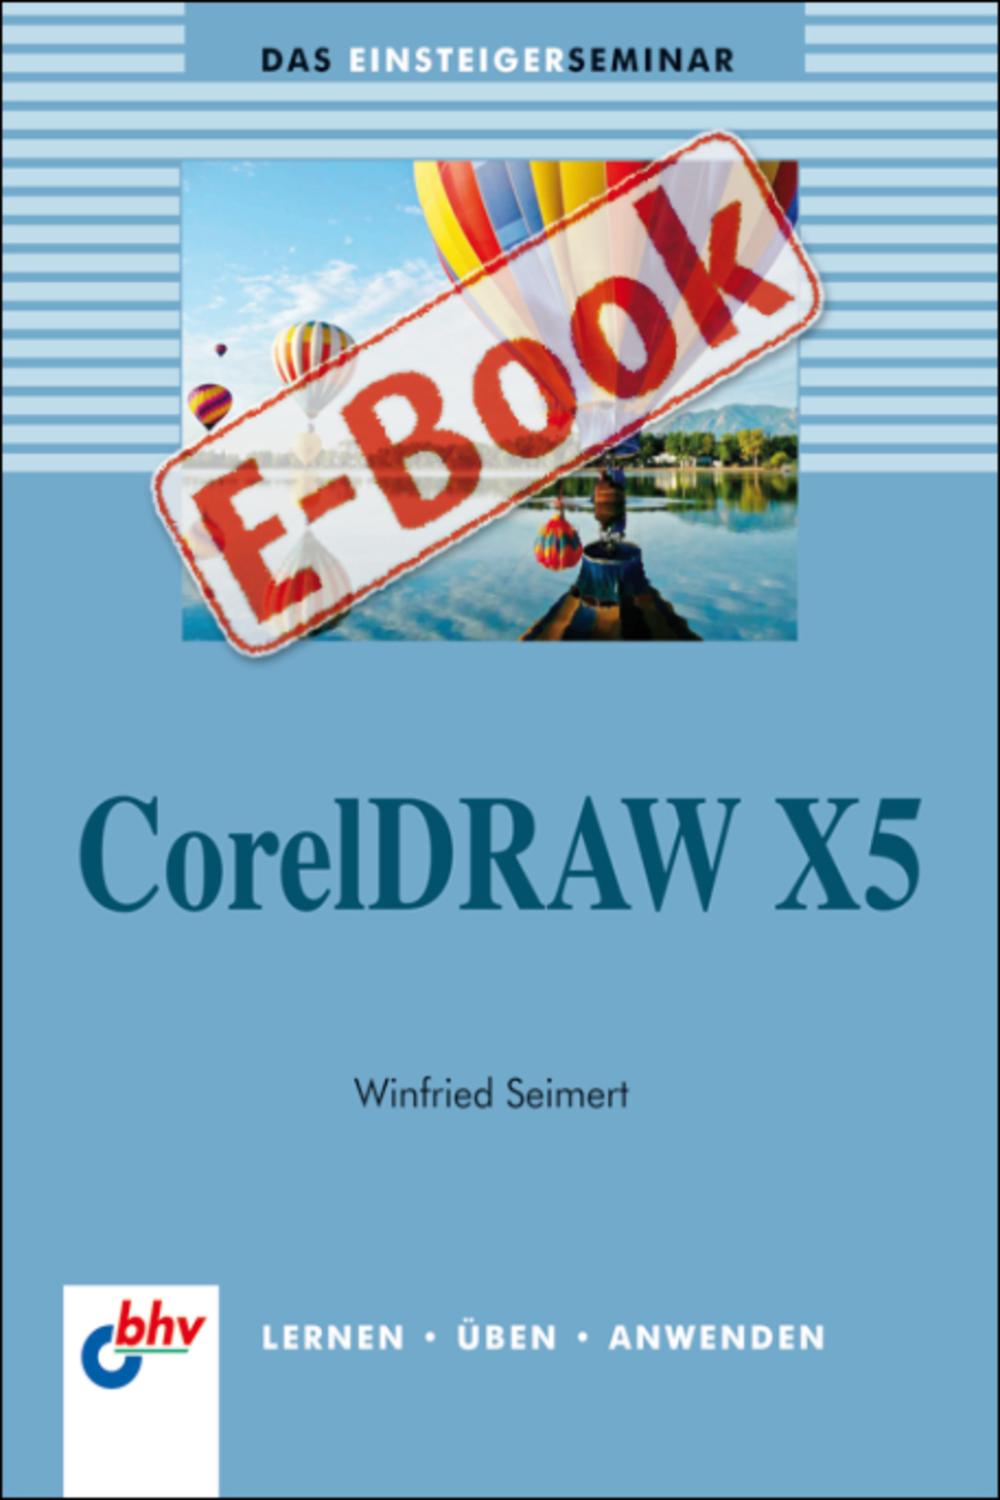 CorelDRAW X5 - Winfried Seimert